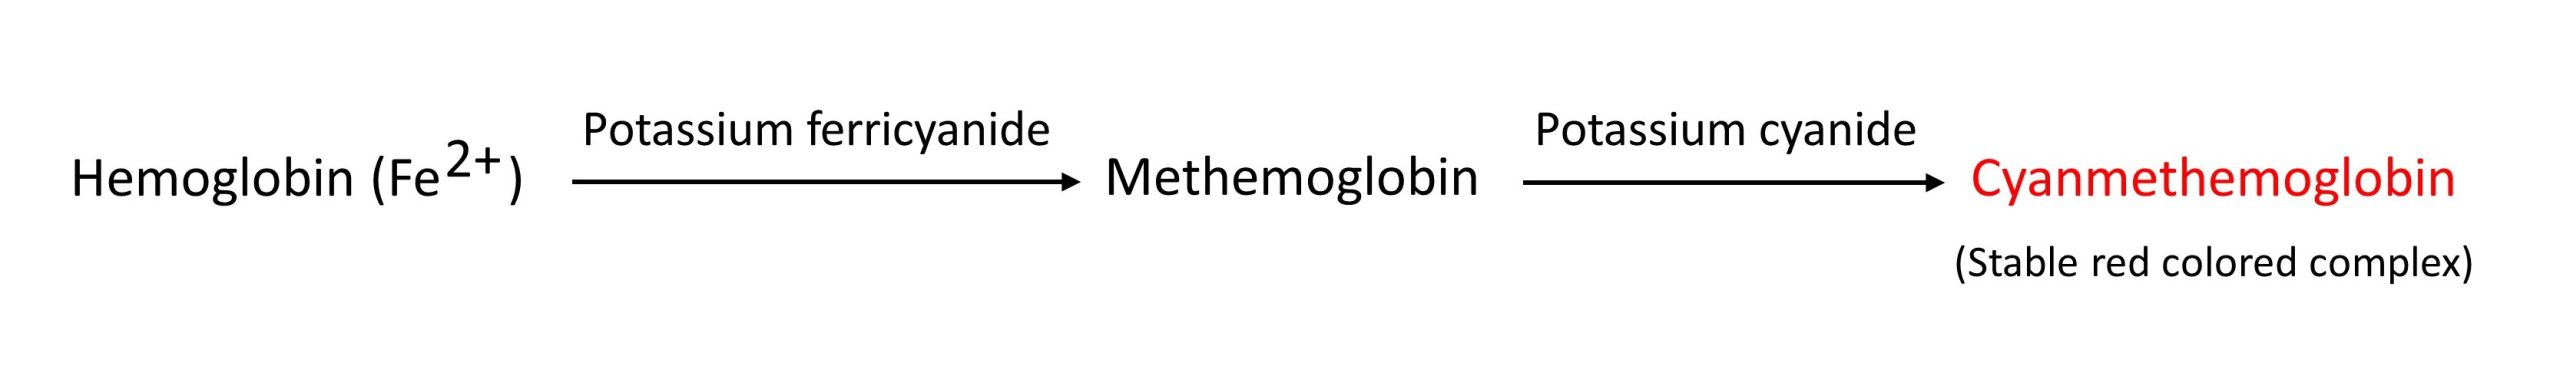 Cyanmethemoglobin-method